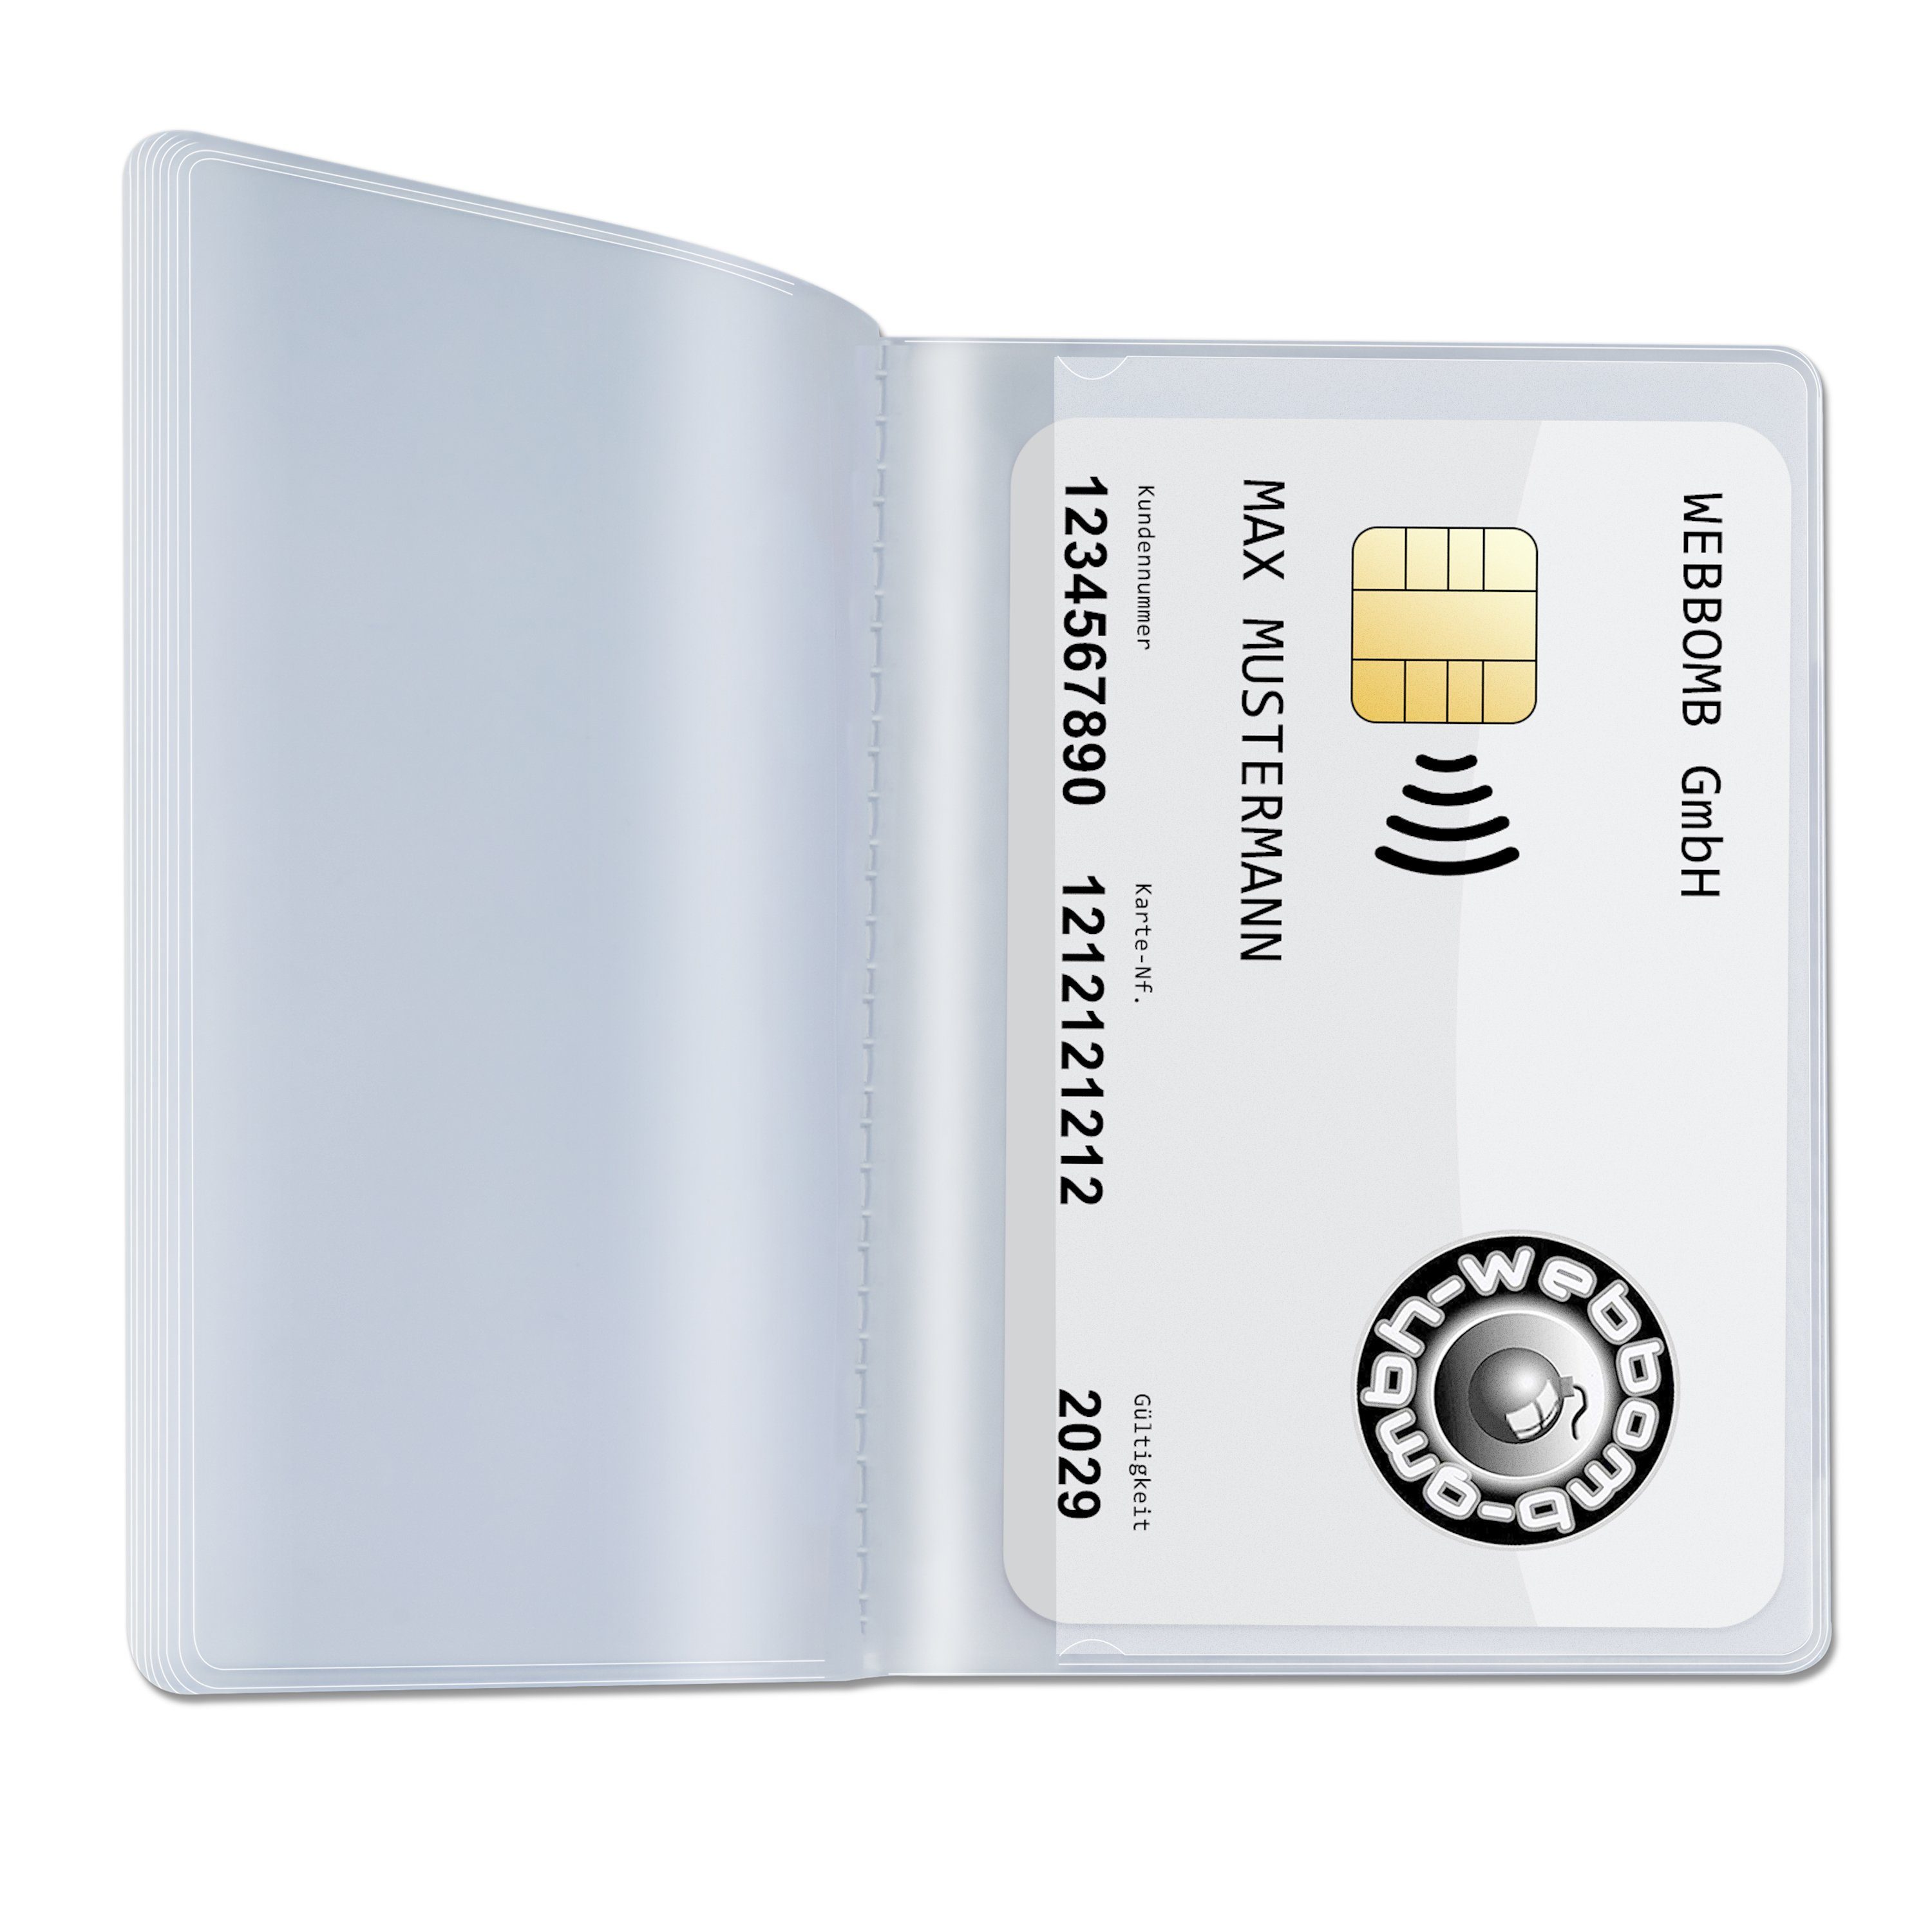 WEBBOMB Kartenetui Kartenhalter Etui Brieftaschen Einsatz 2x10fach transparent 10fach Wallet